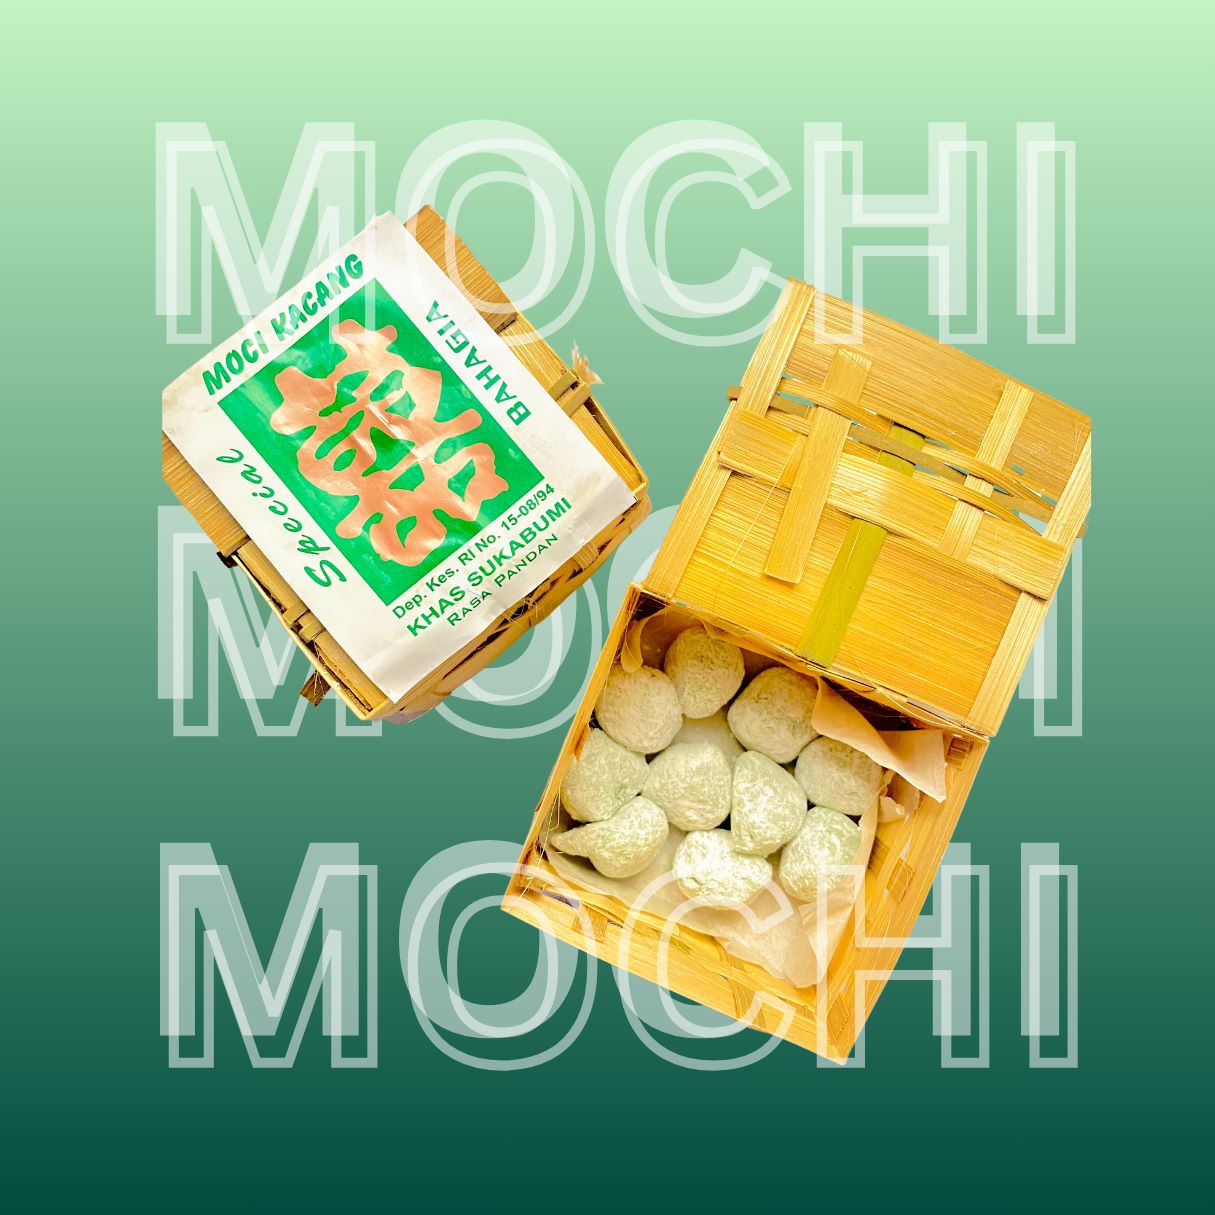 Mochi kacang